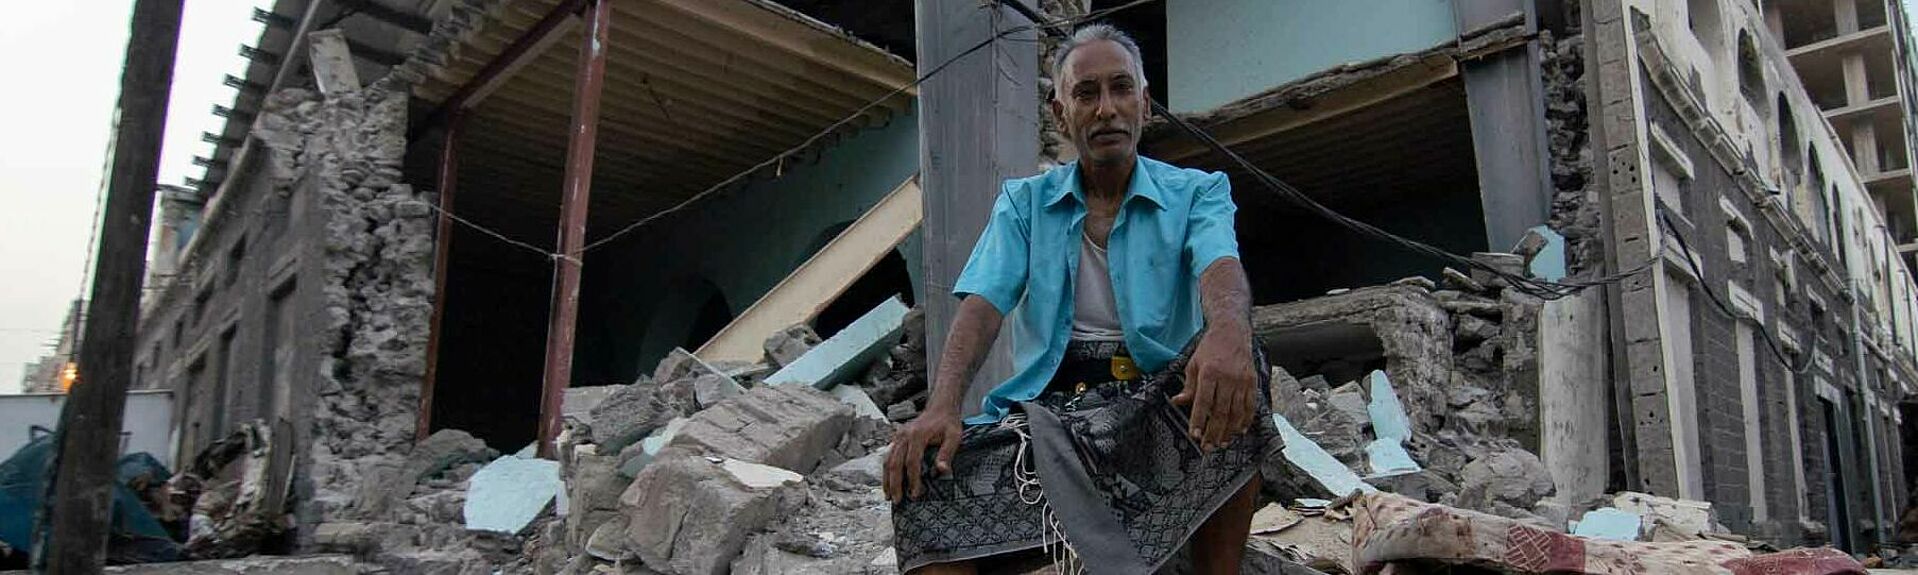 Mann im Jemen auf Trümmern